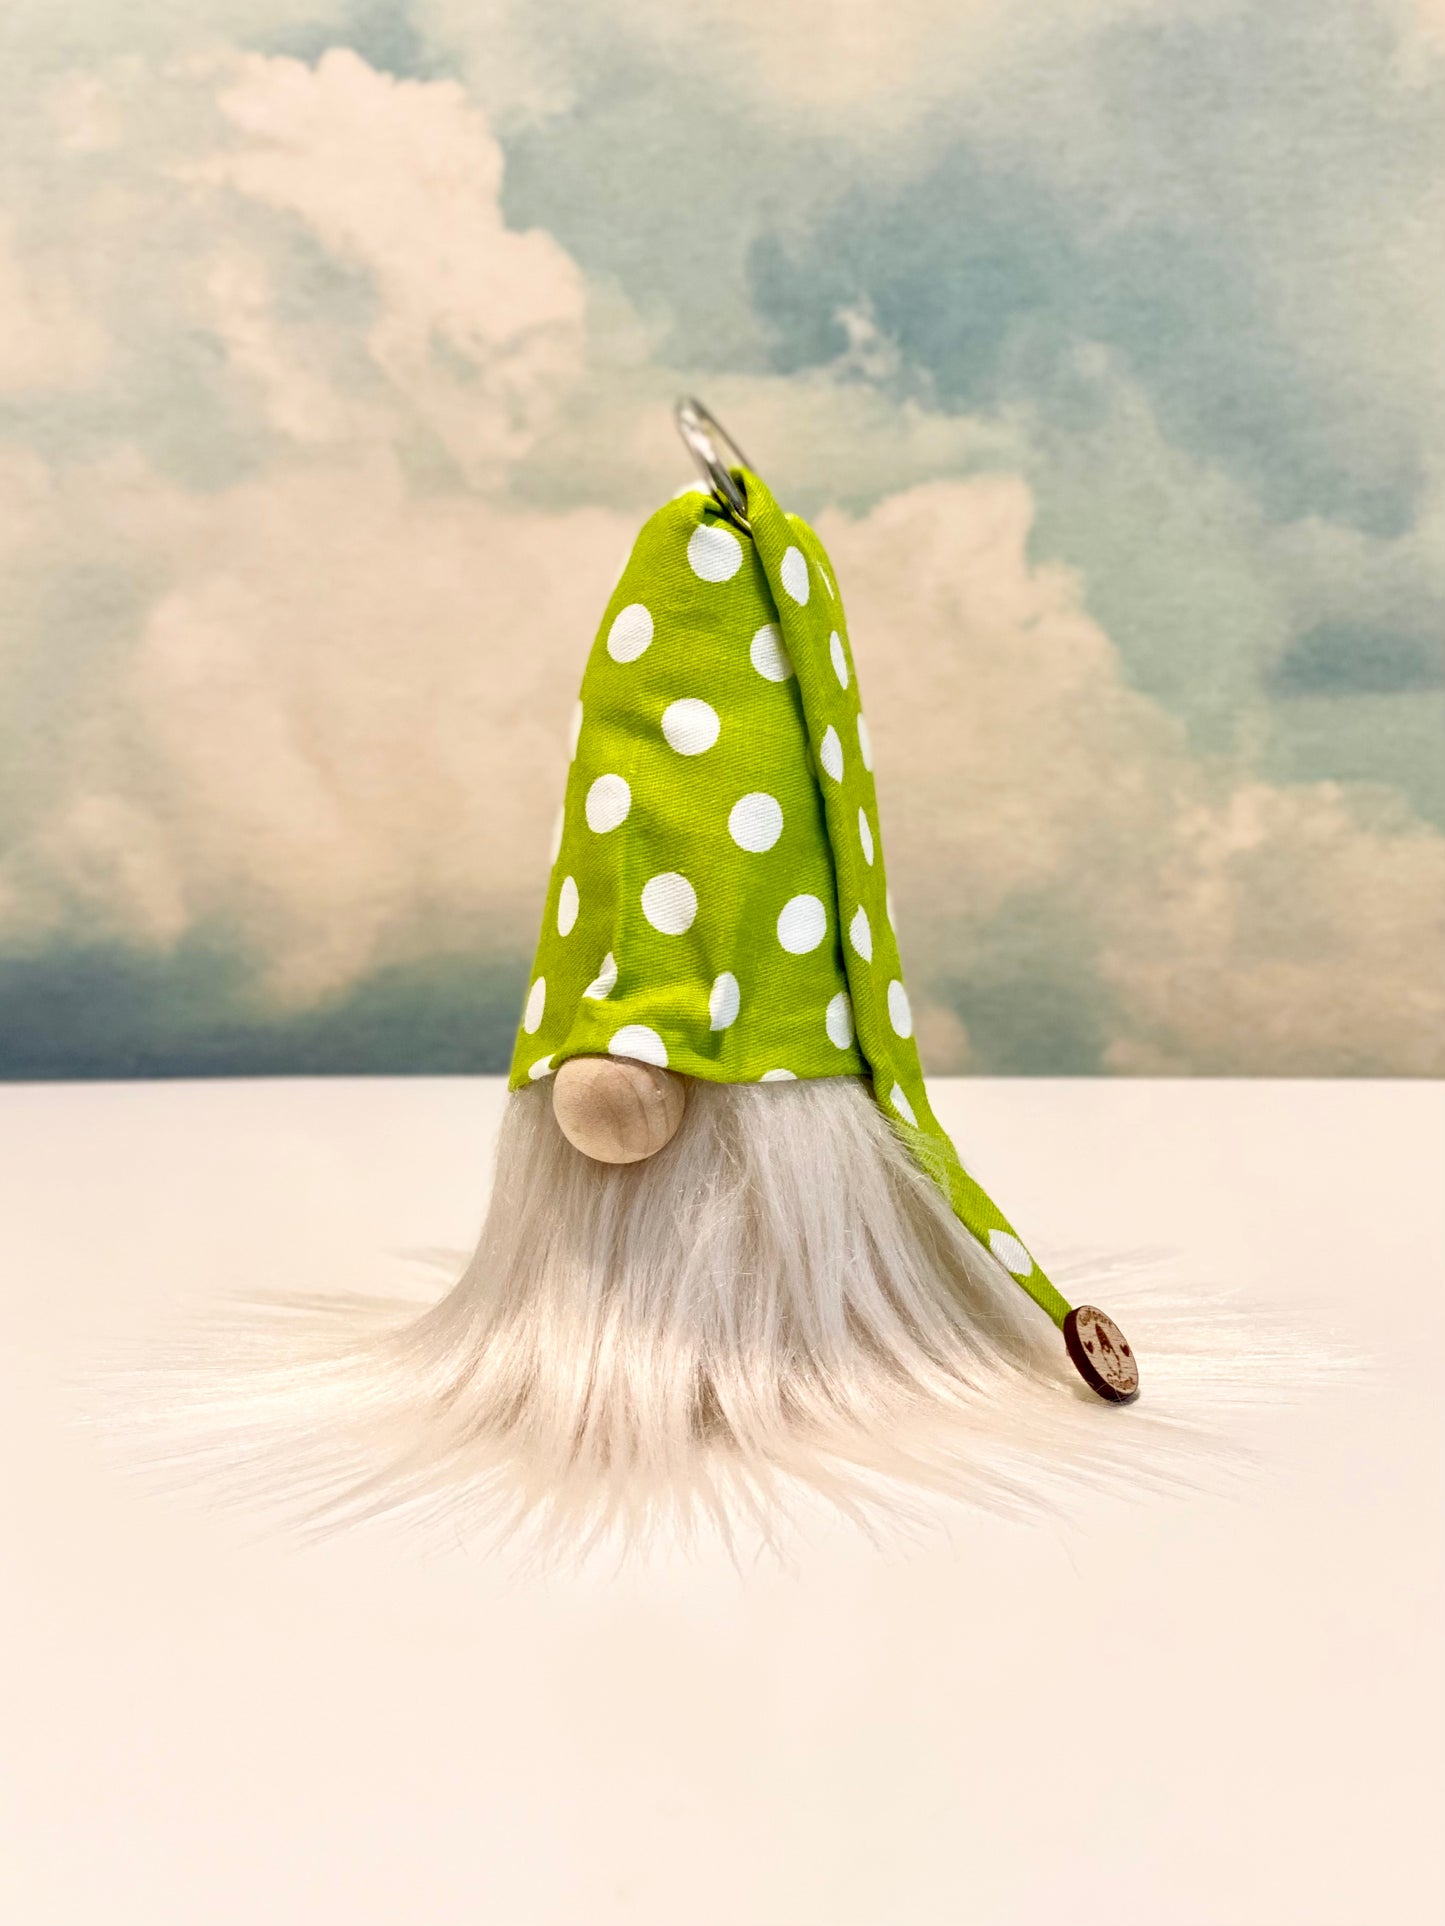 Gulfport Gnome™ - Spring Green Polkadot Plush Gnome- Spring Home Decor